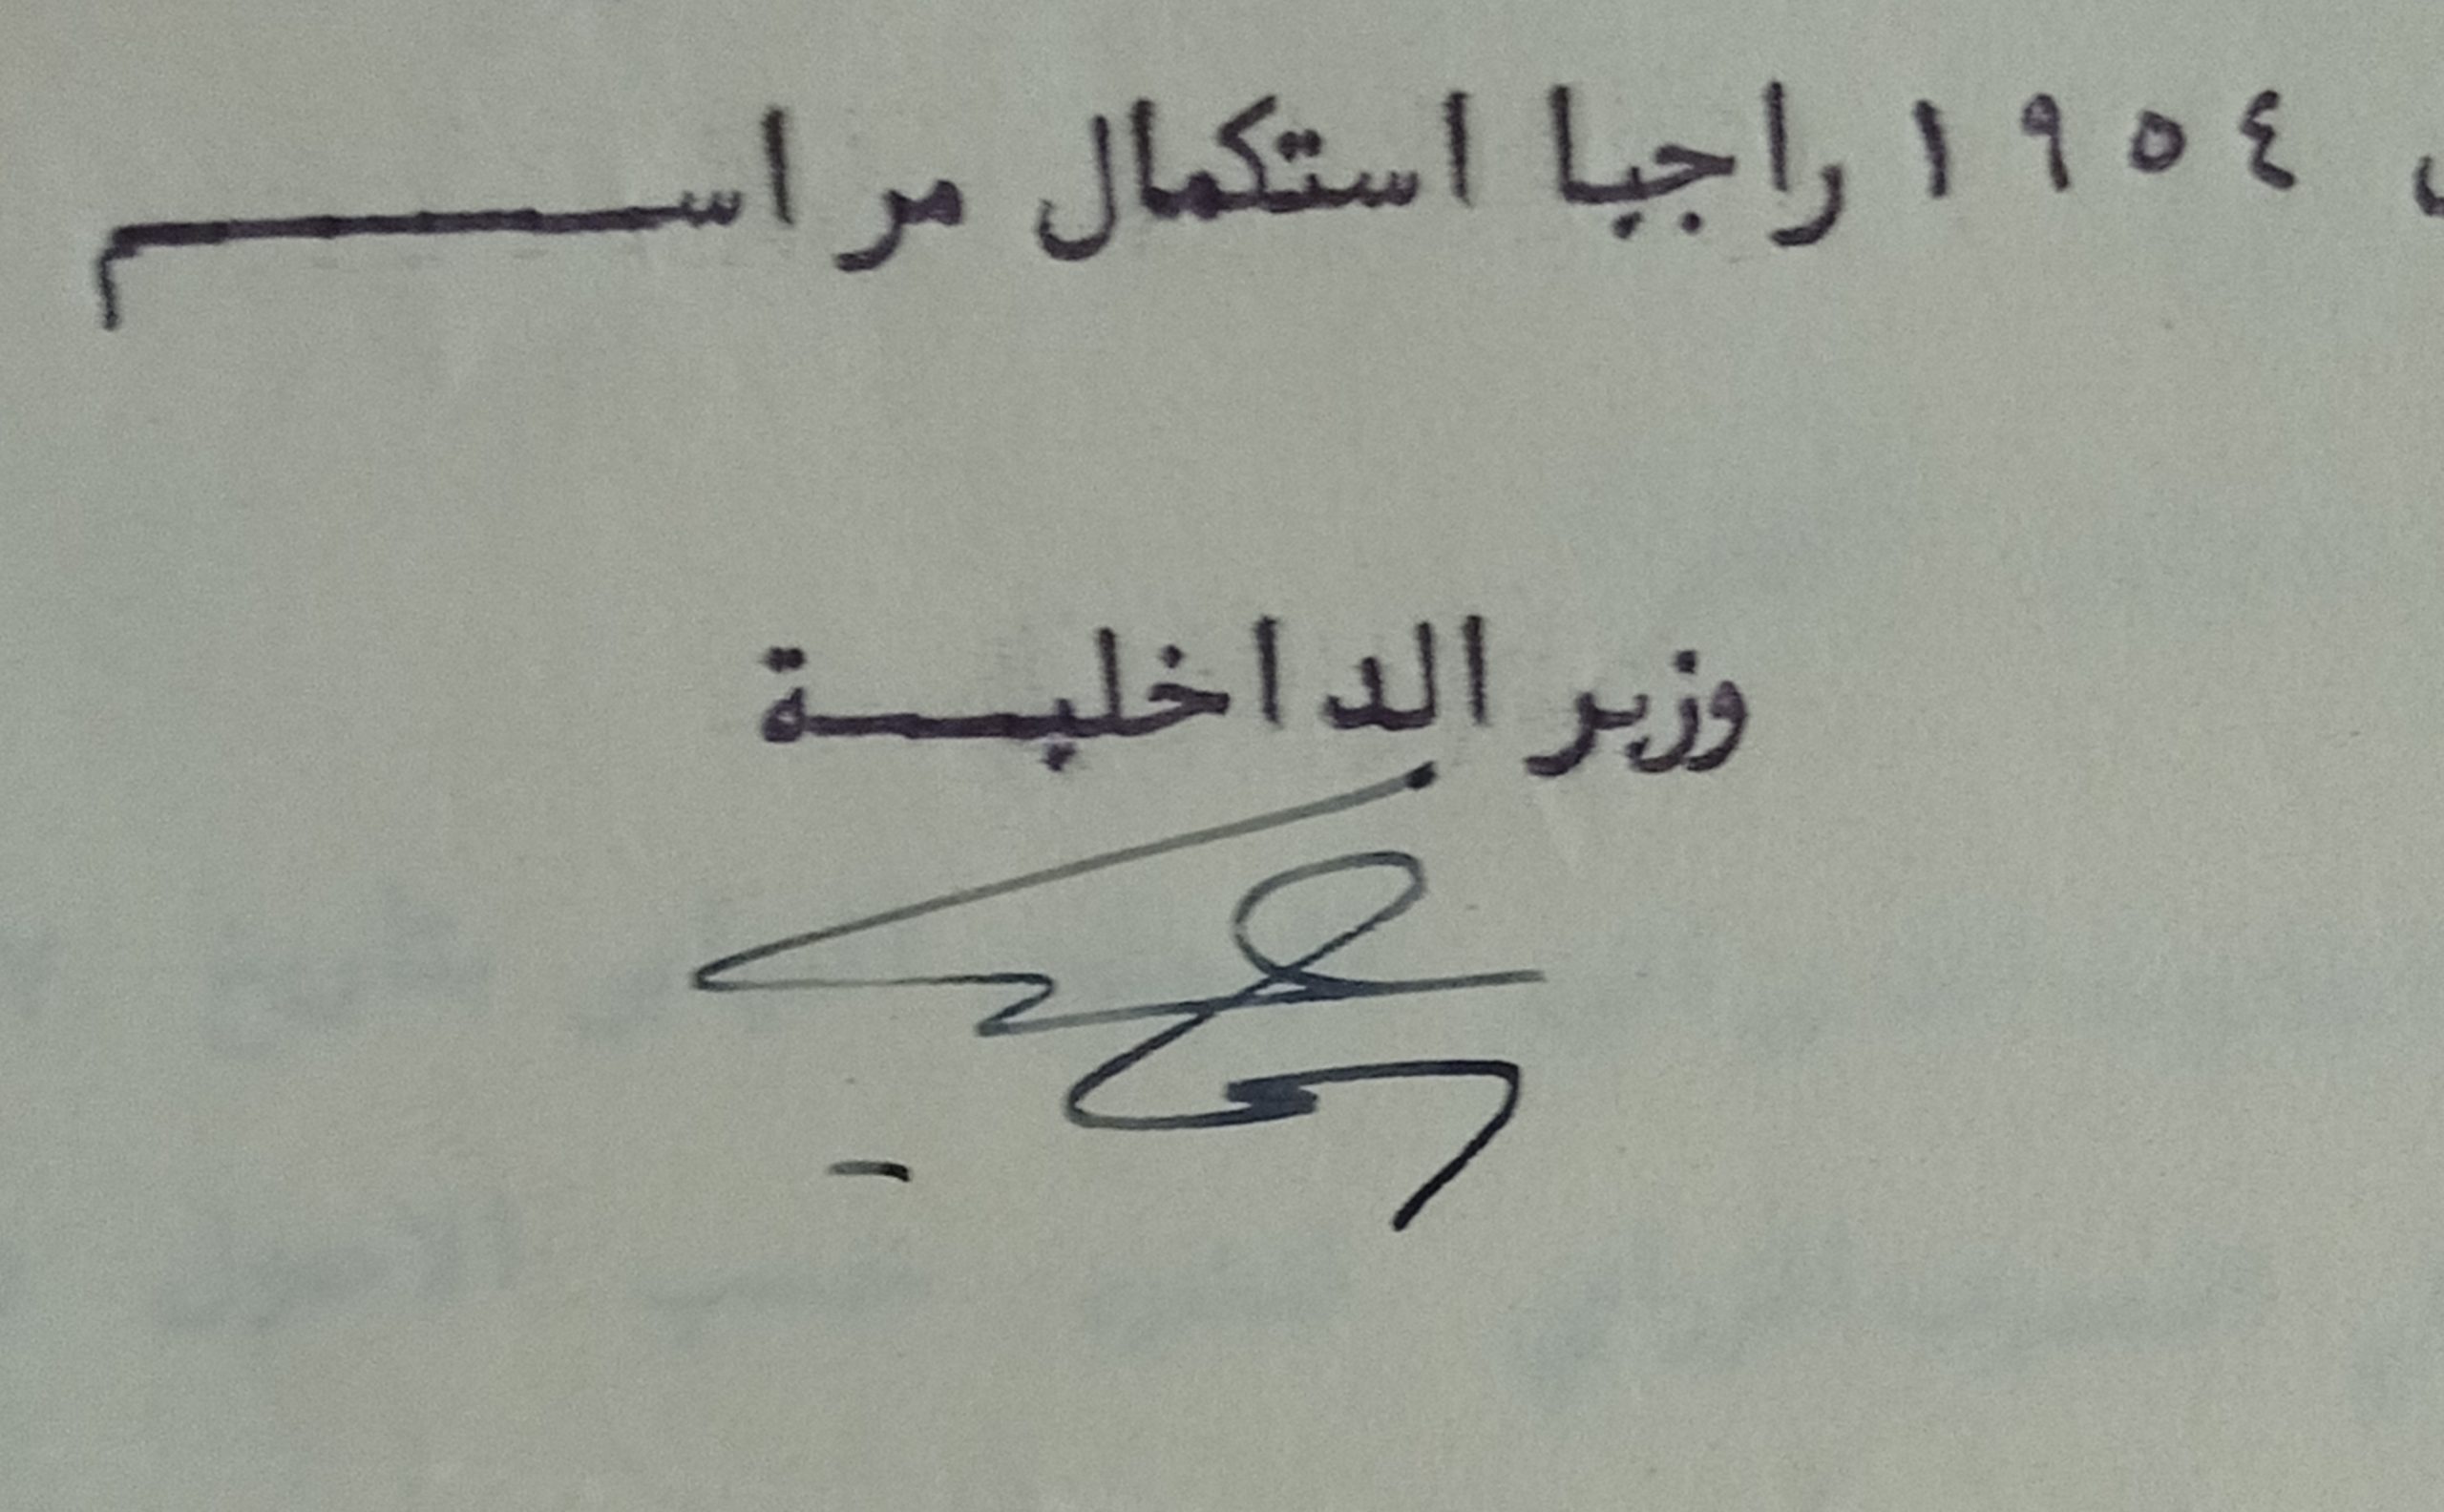 التاريخ السوري المعاصر - توقيع إسماعيل قولي وزير الداخلية في سورية عام 1954